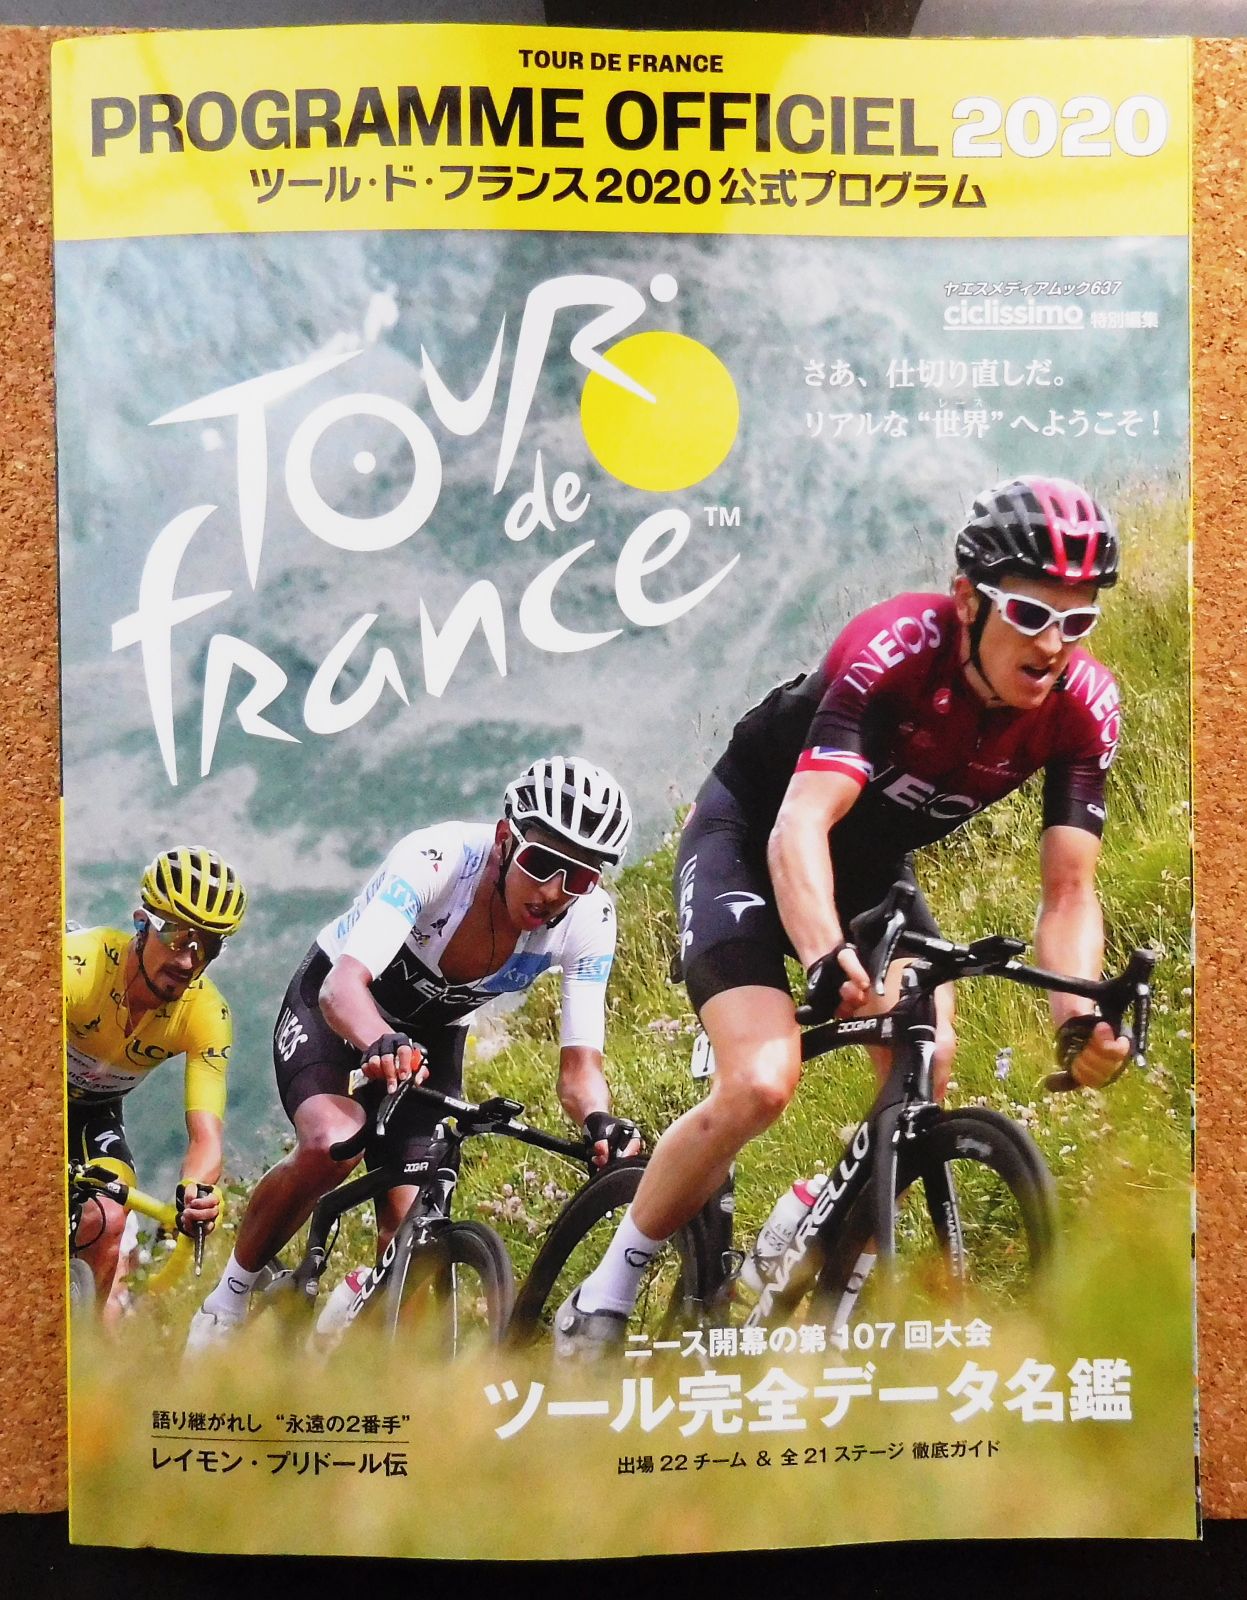 ツール ド フランス 開幕 京の遊民通信 楽天ブログ